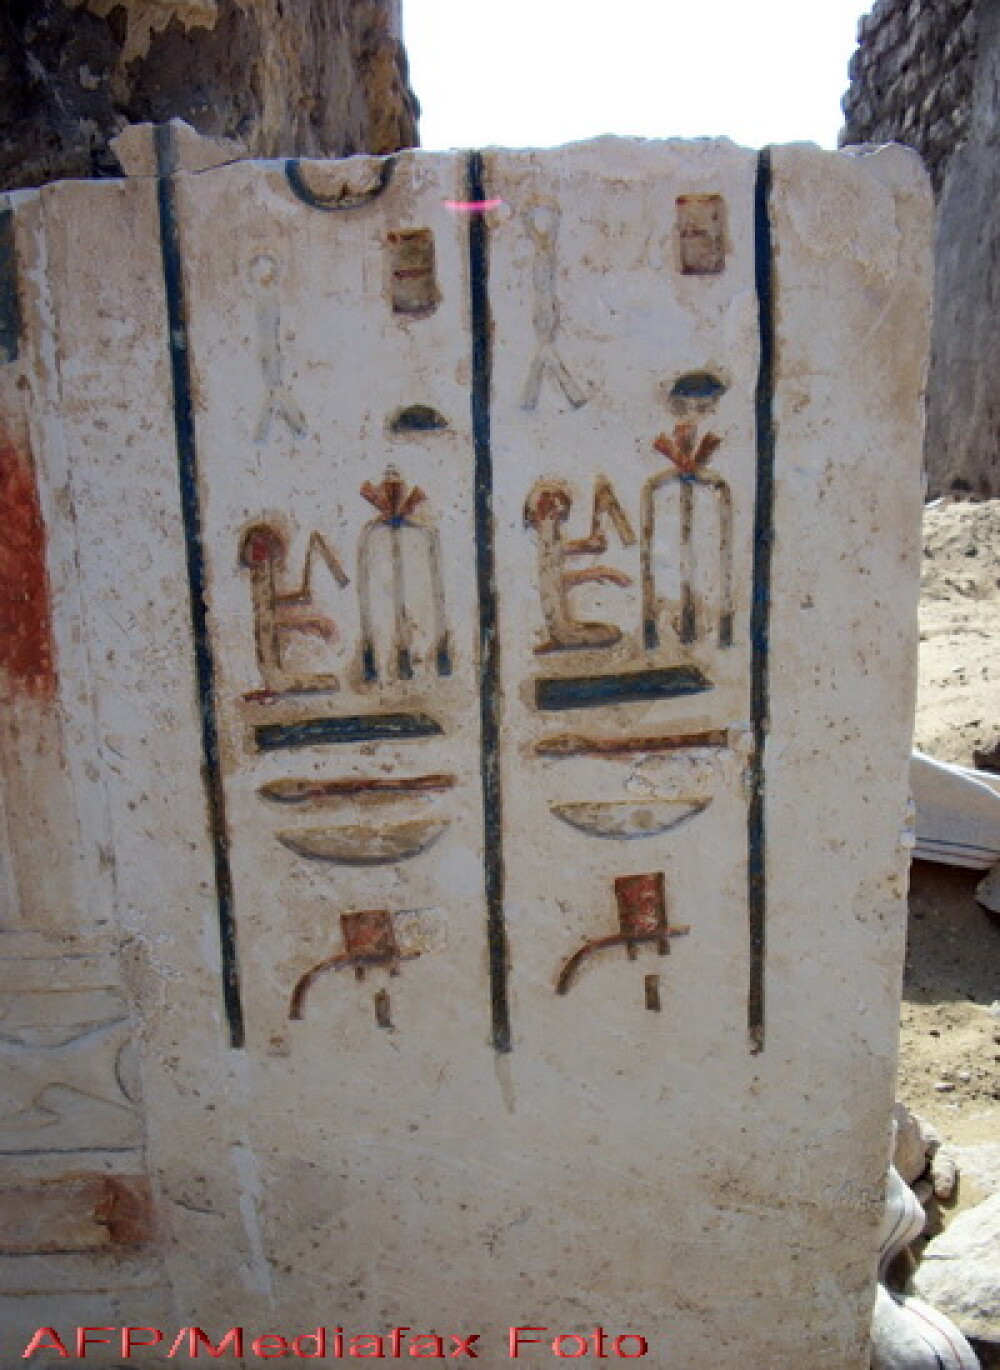 Mormant din vremea lui Ramses, vechi de 3.000 de ani, descoperit in Egipt - Imaginea 2